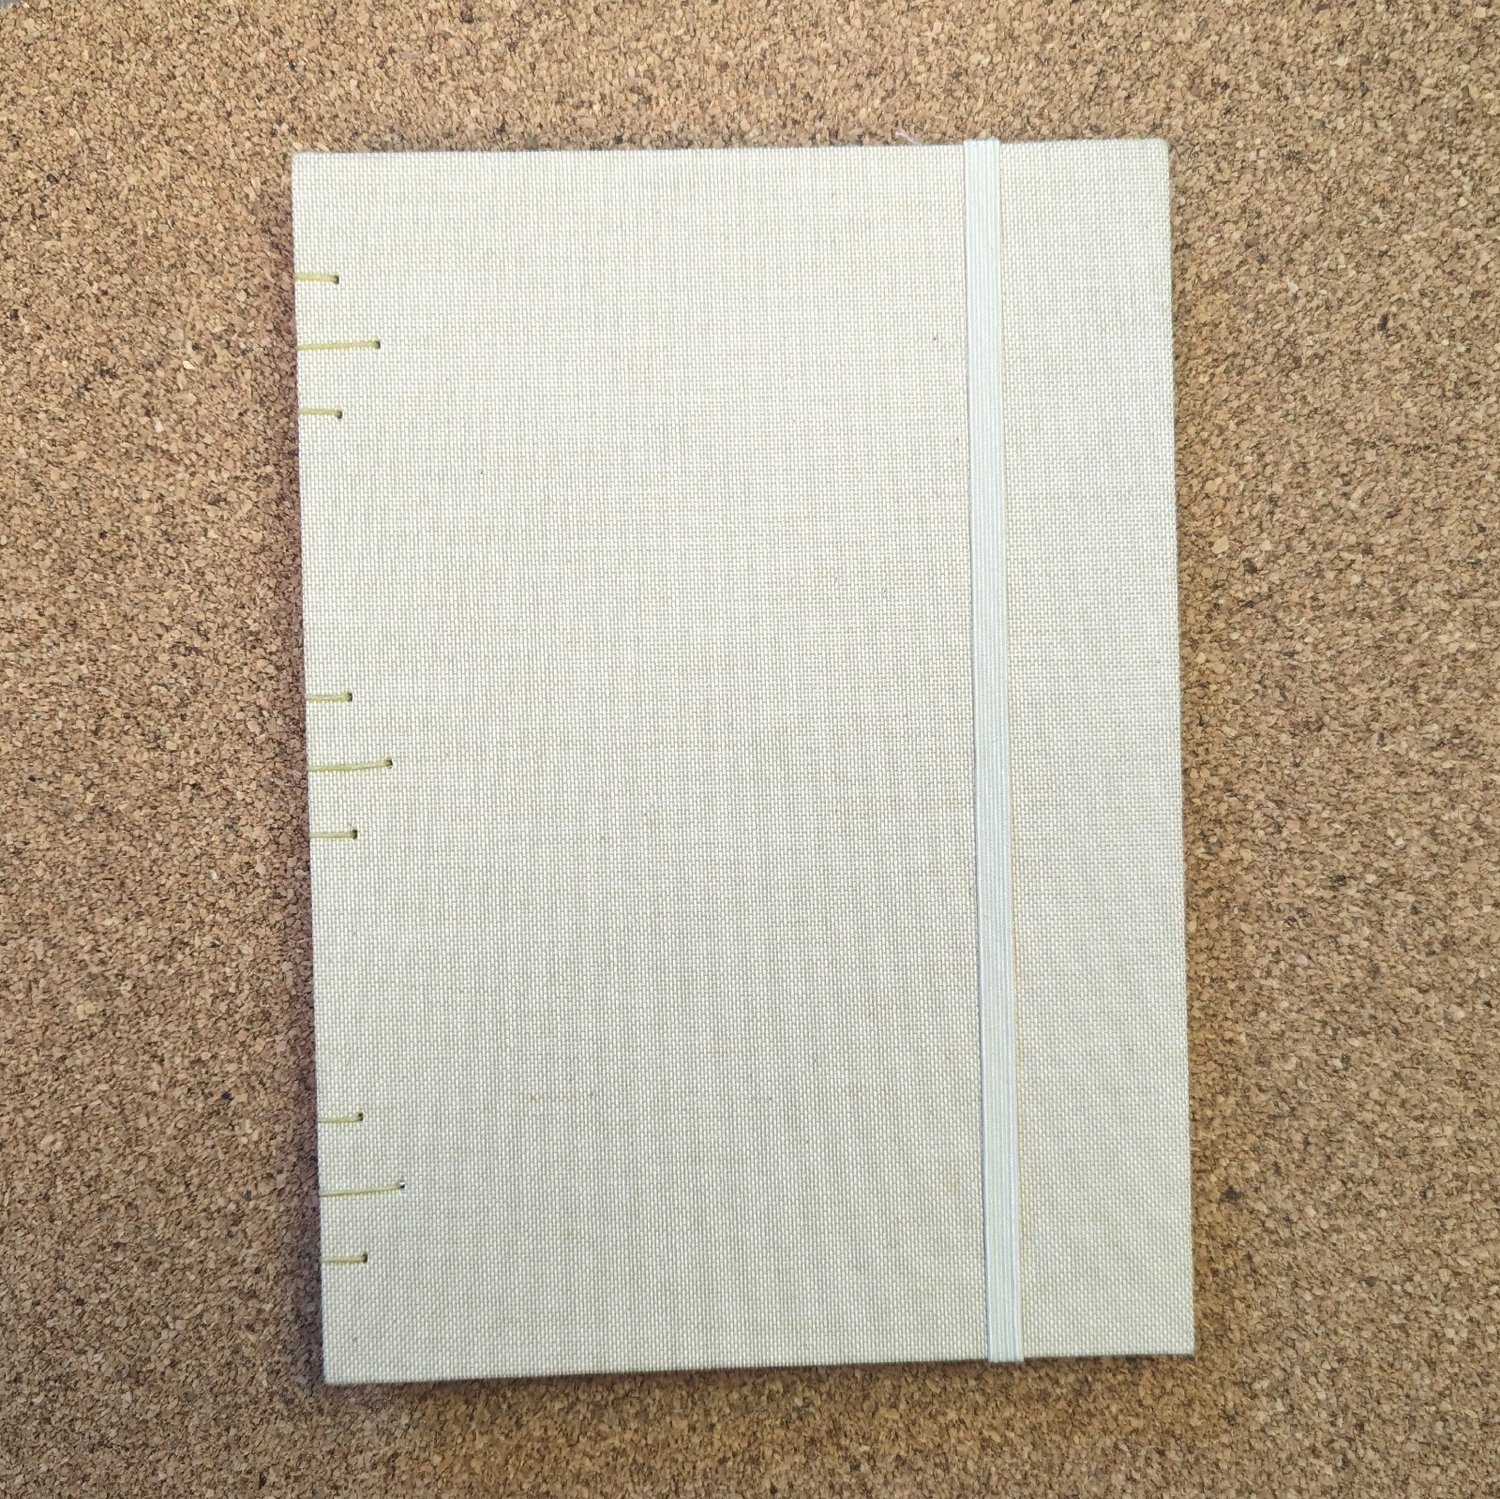 Image of Medium Linen Sketchbook